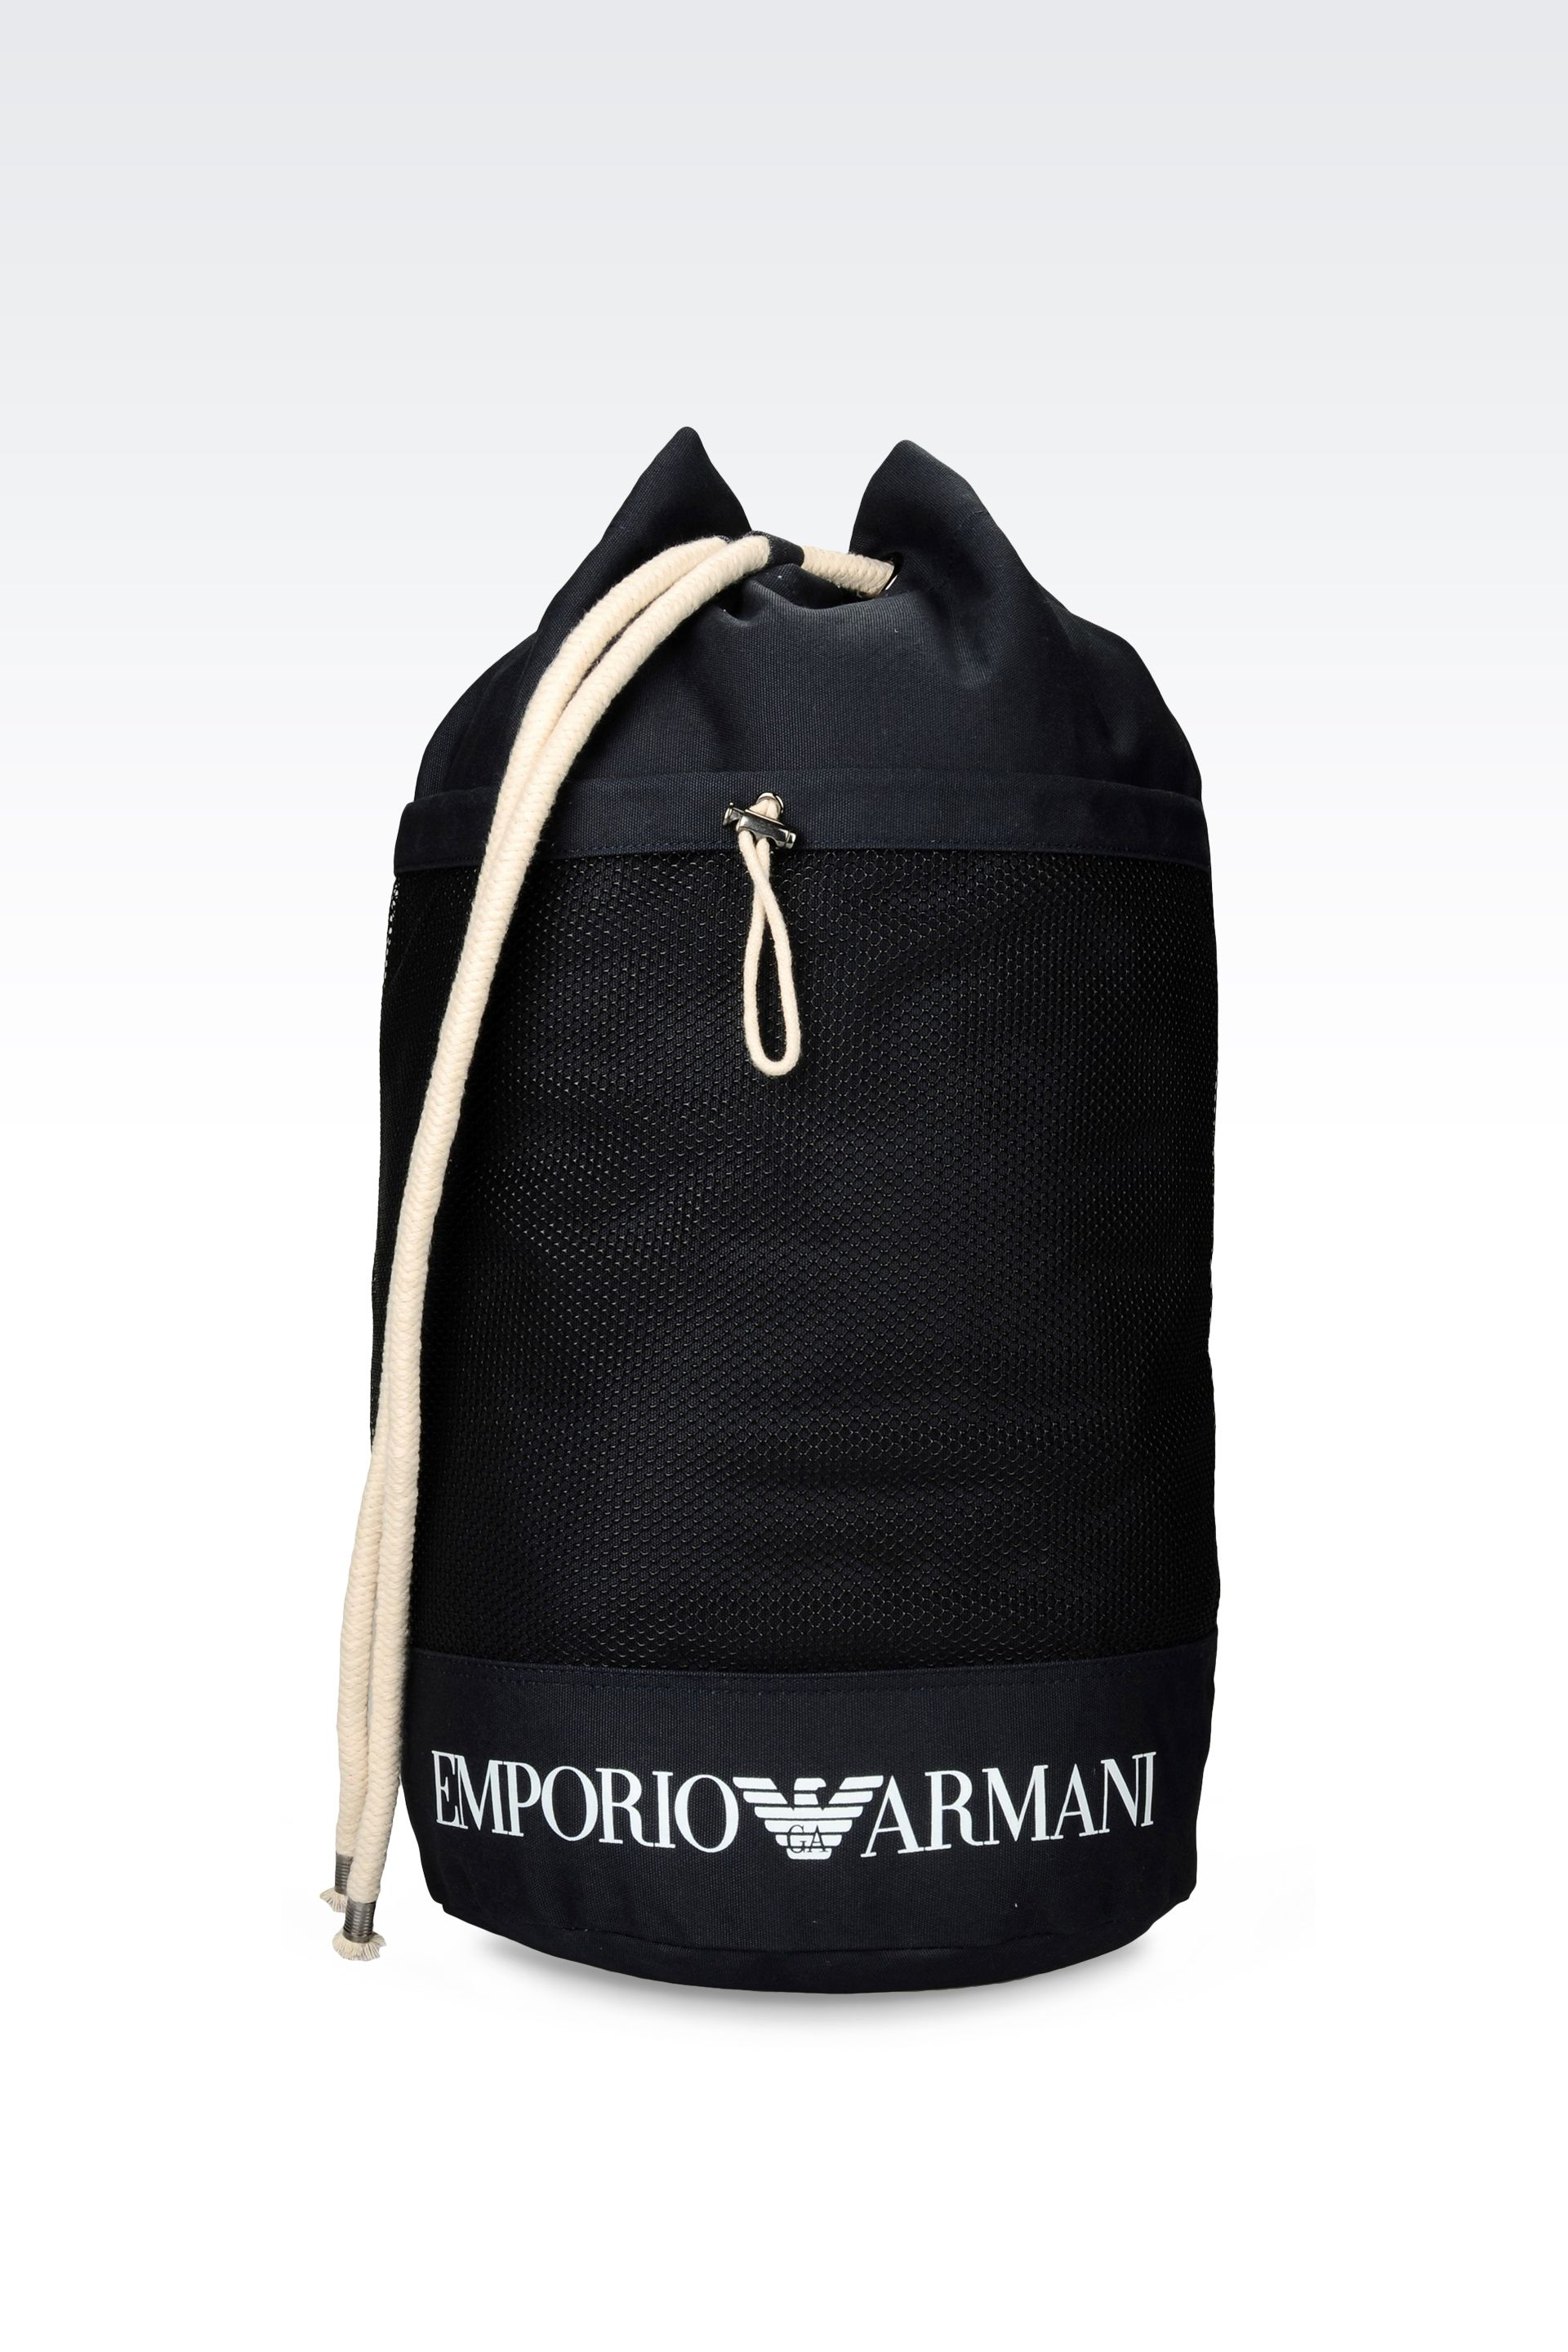 emporio armani beach bag